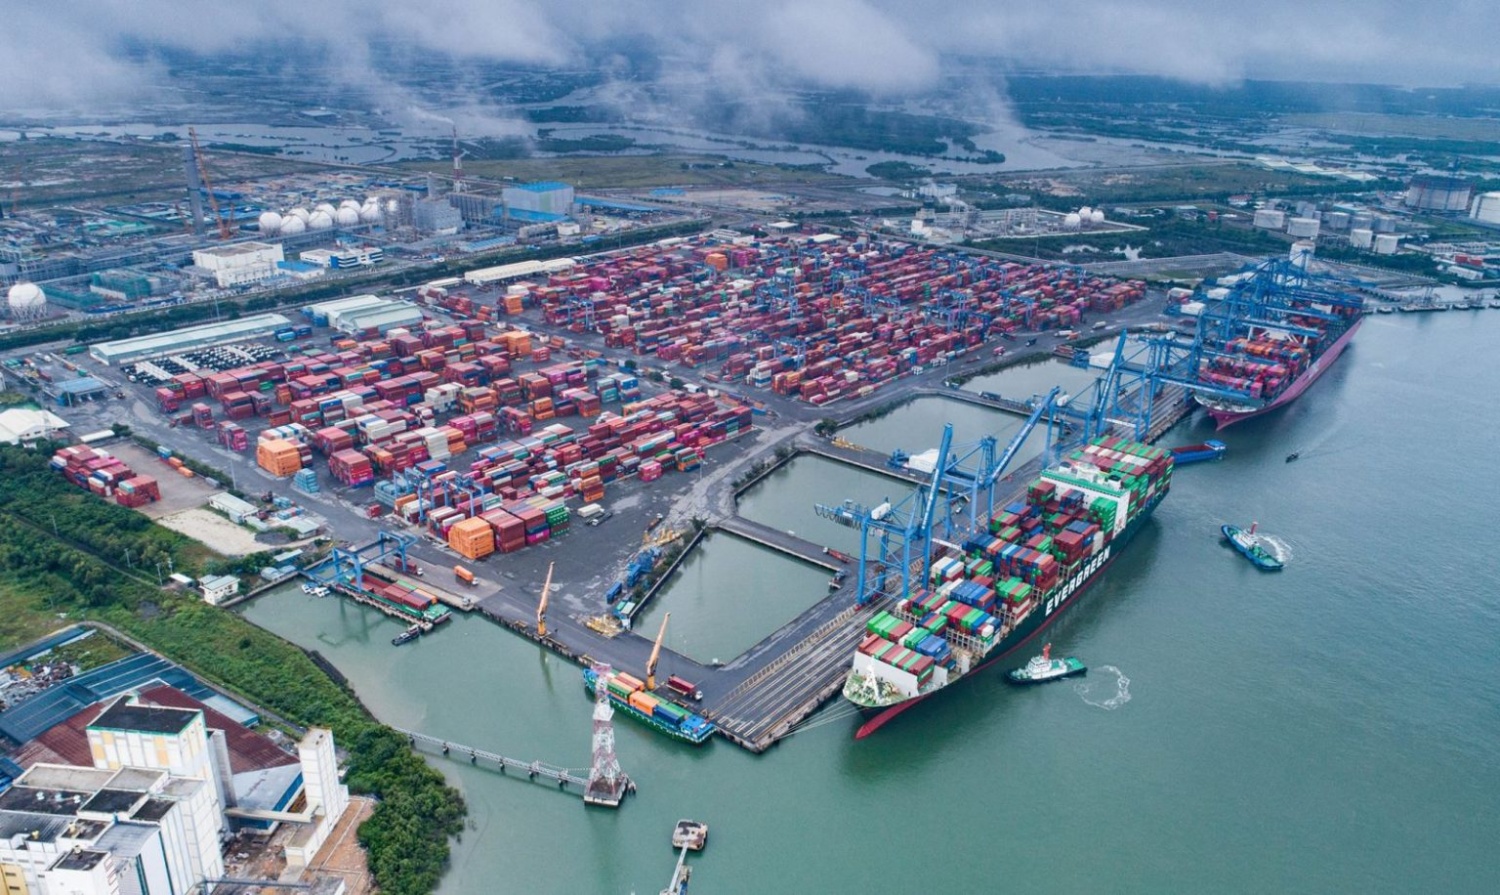 Hàng hóa thông qua cảng biển tăng mạnh